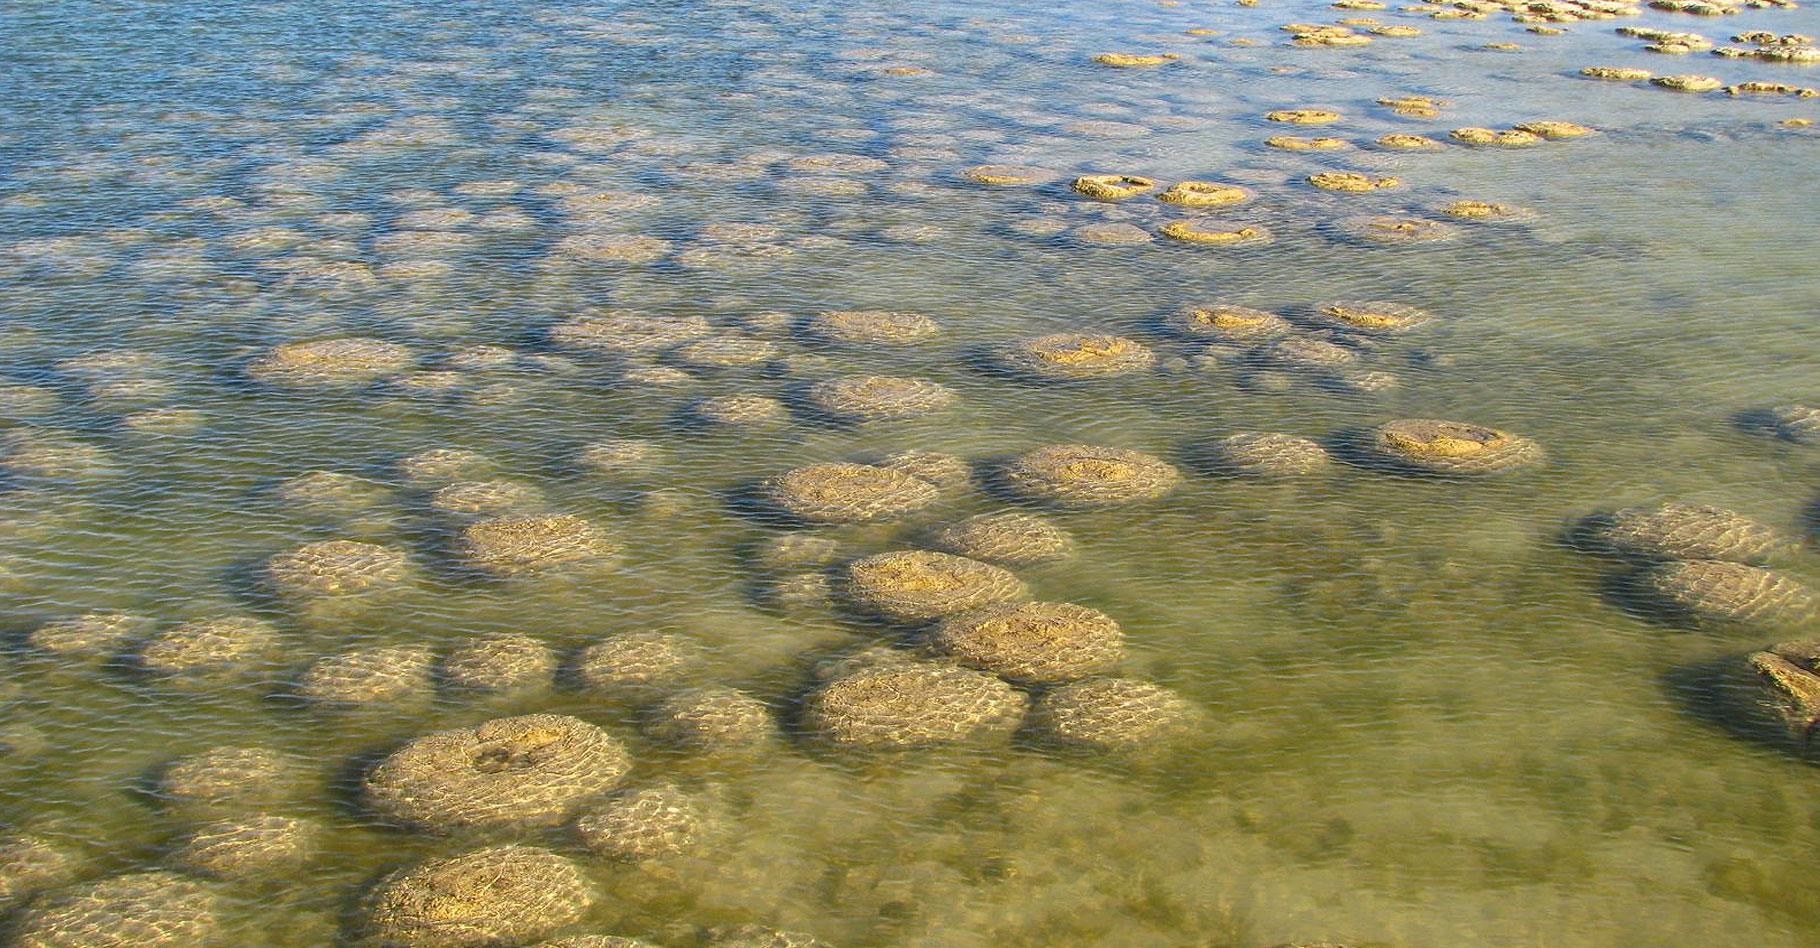 Les stromatolites, formation sédimentaire des cyanobactéries